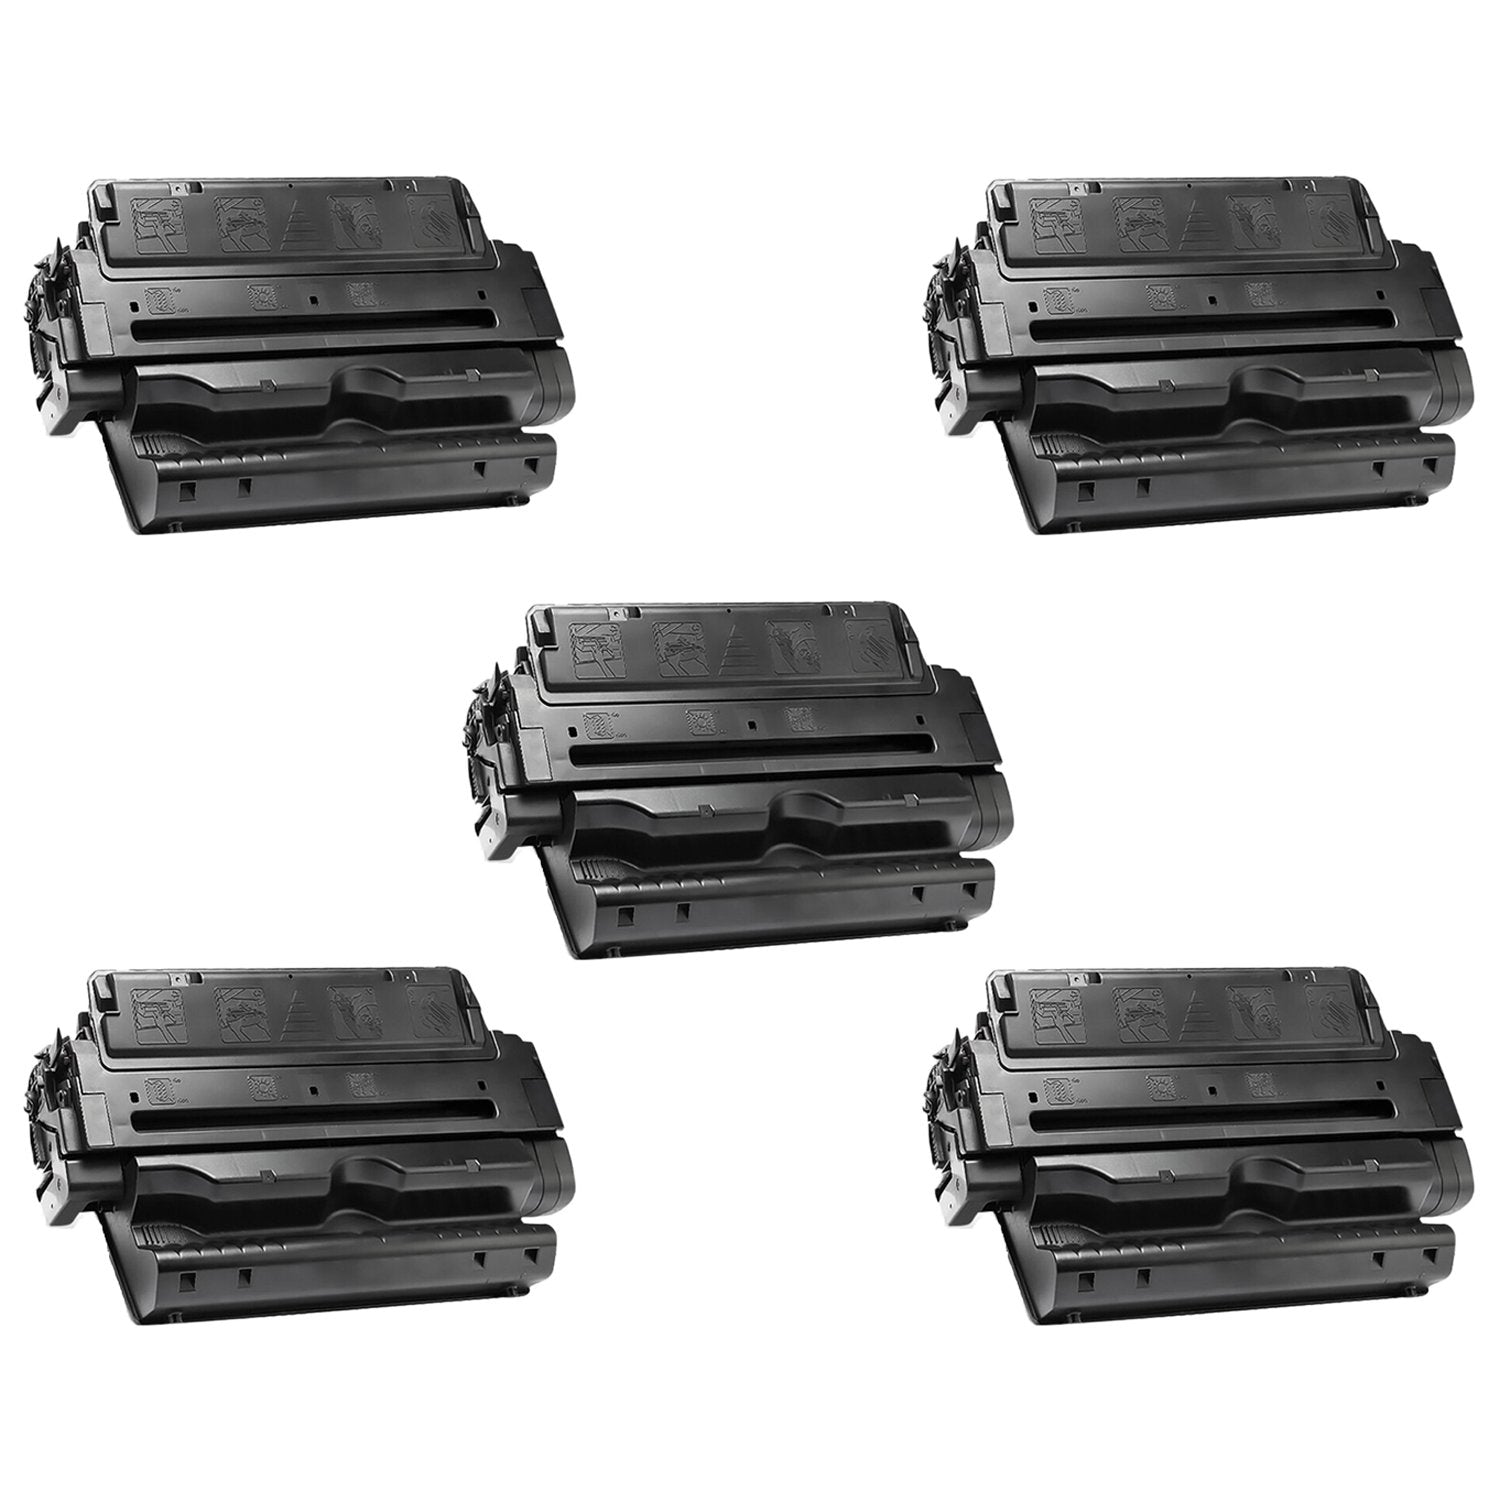 Absolute Toner Compatible HP 82A C4182A Black Toner Cartridge by Absolute Toner HP Toner Cartridges